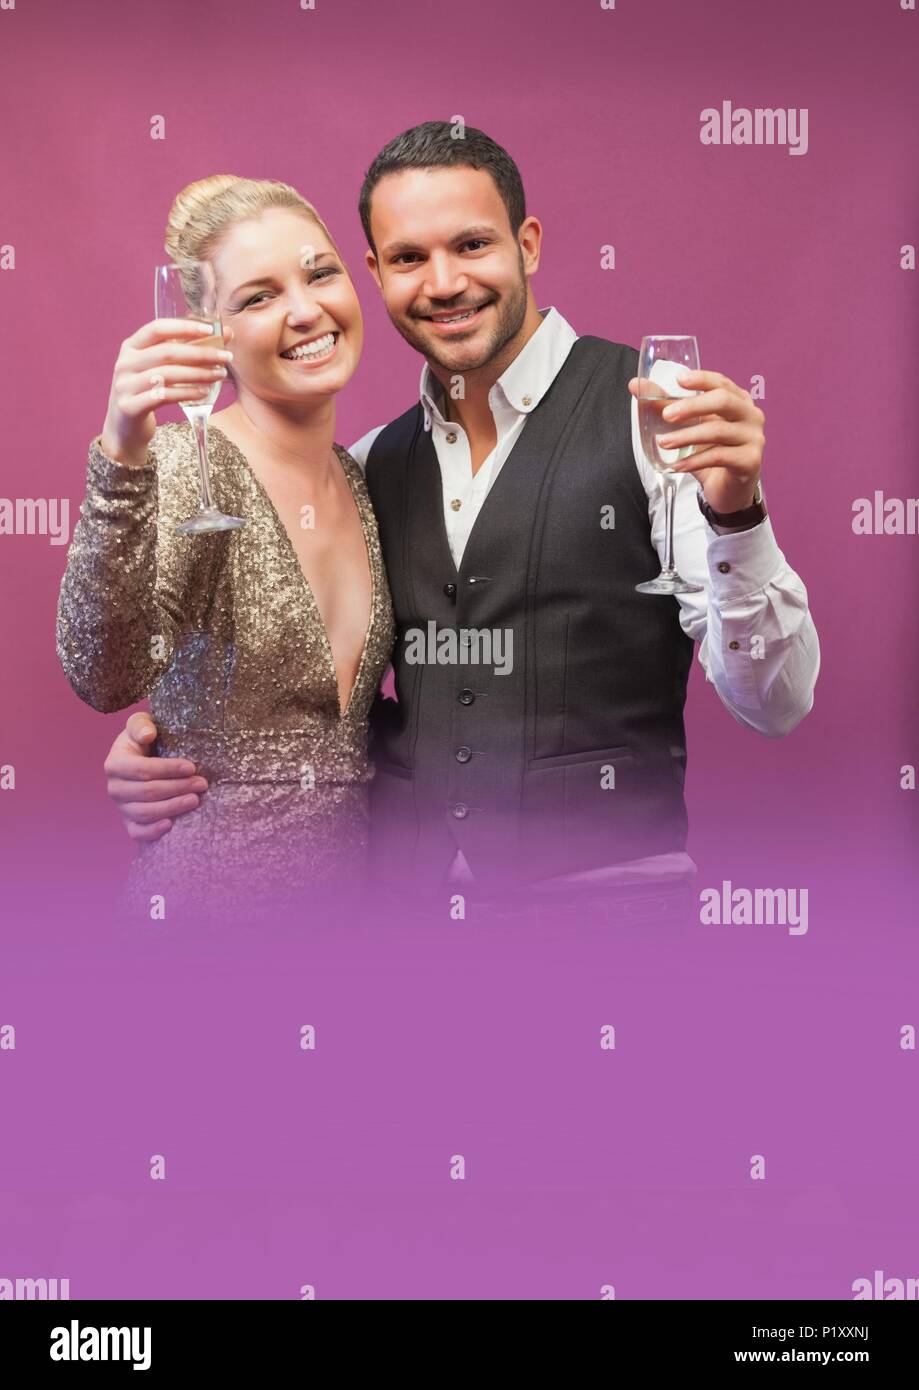 Glamorous couple holding champagne glasses Stock Photo